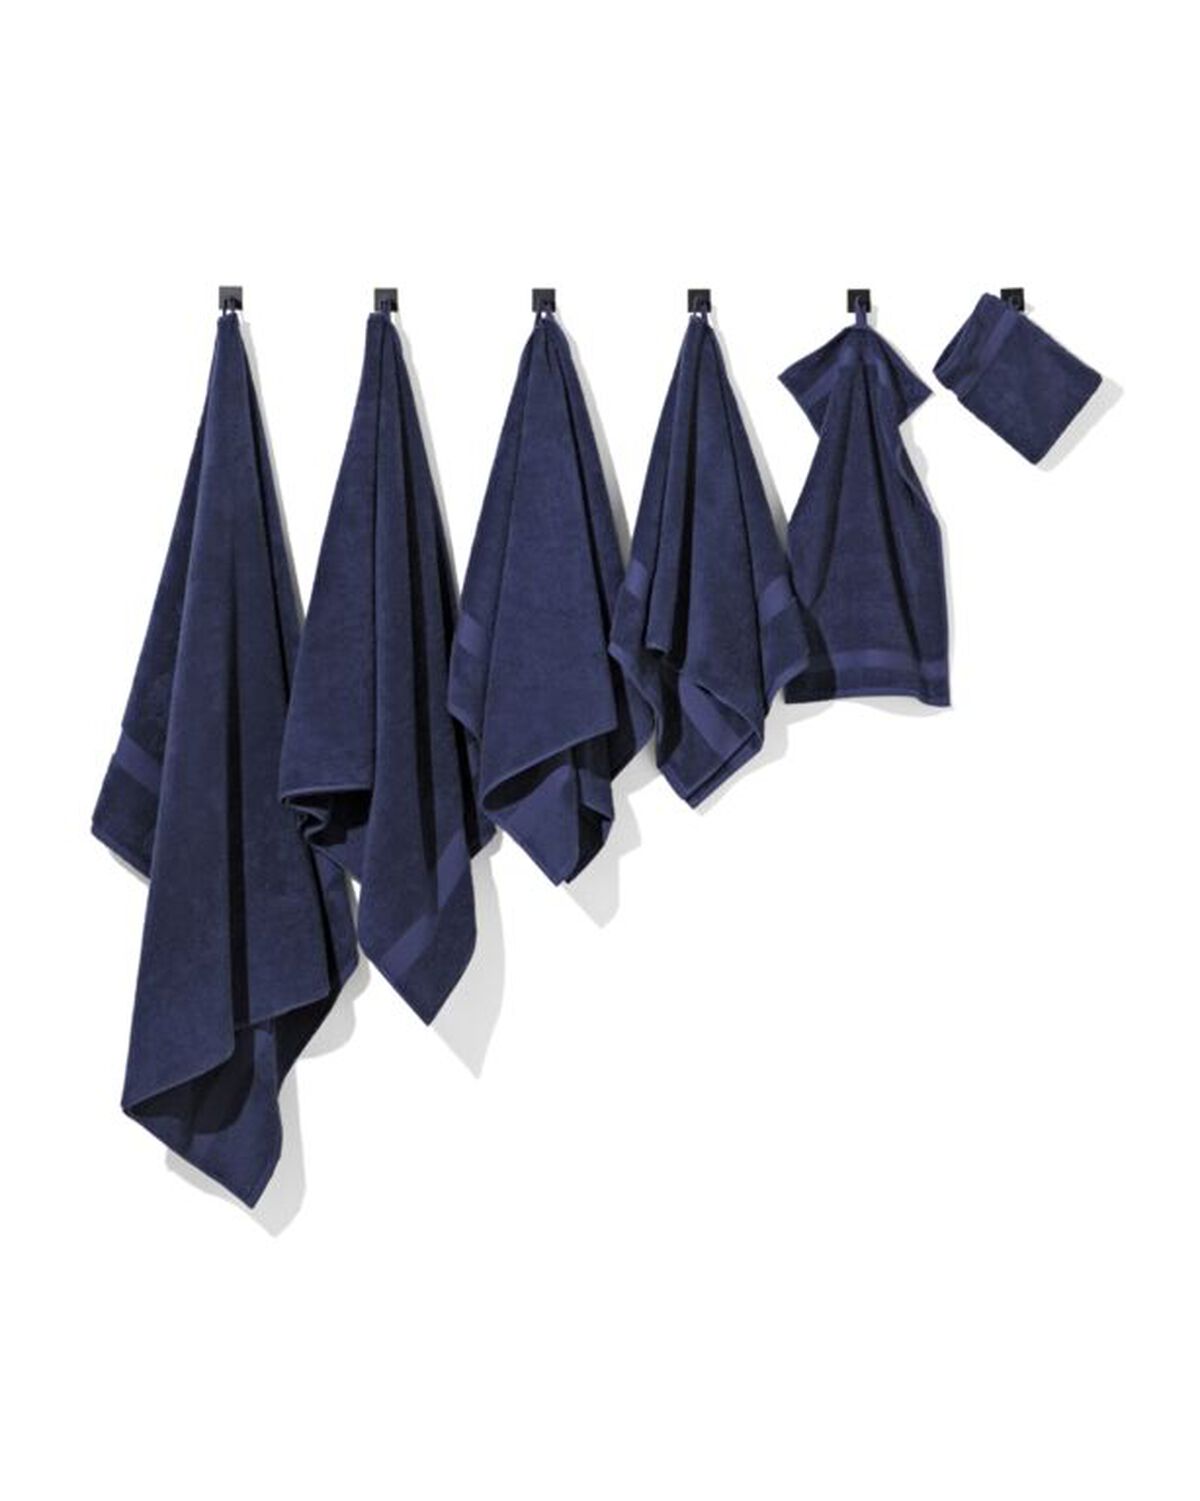 serviettes de qualité lourde bleu nuit - 200837 - HEMA